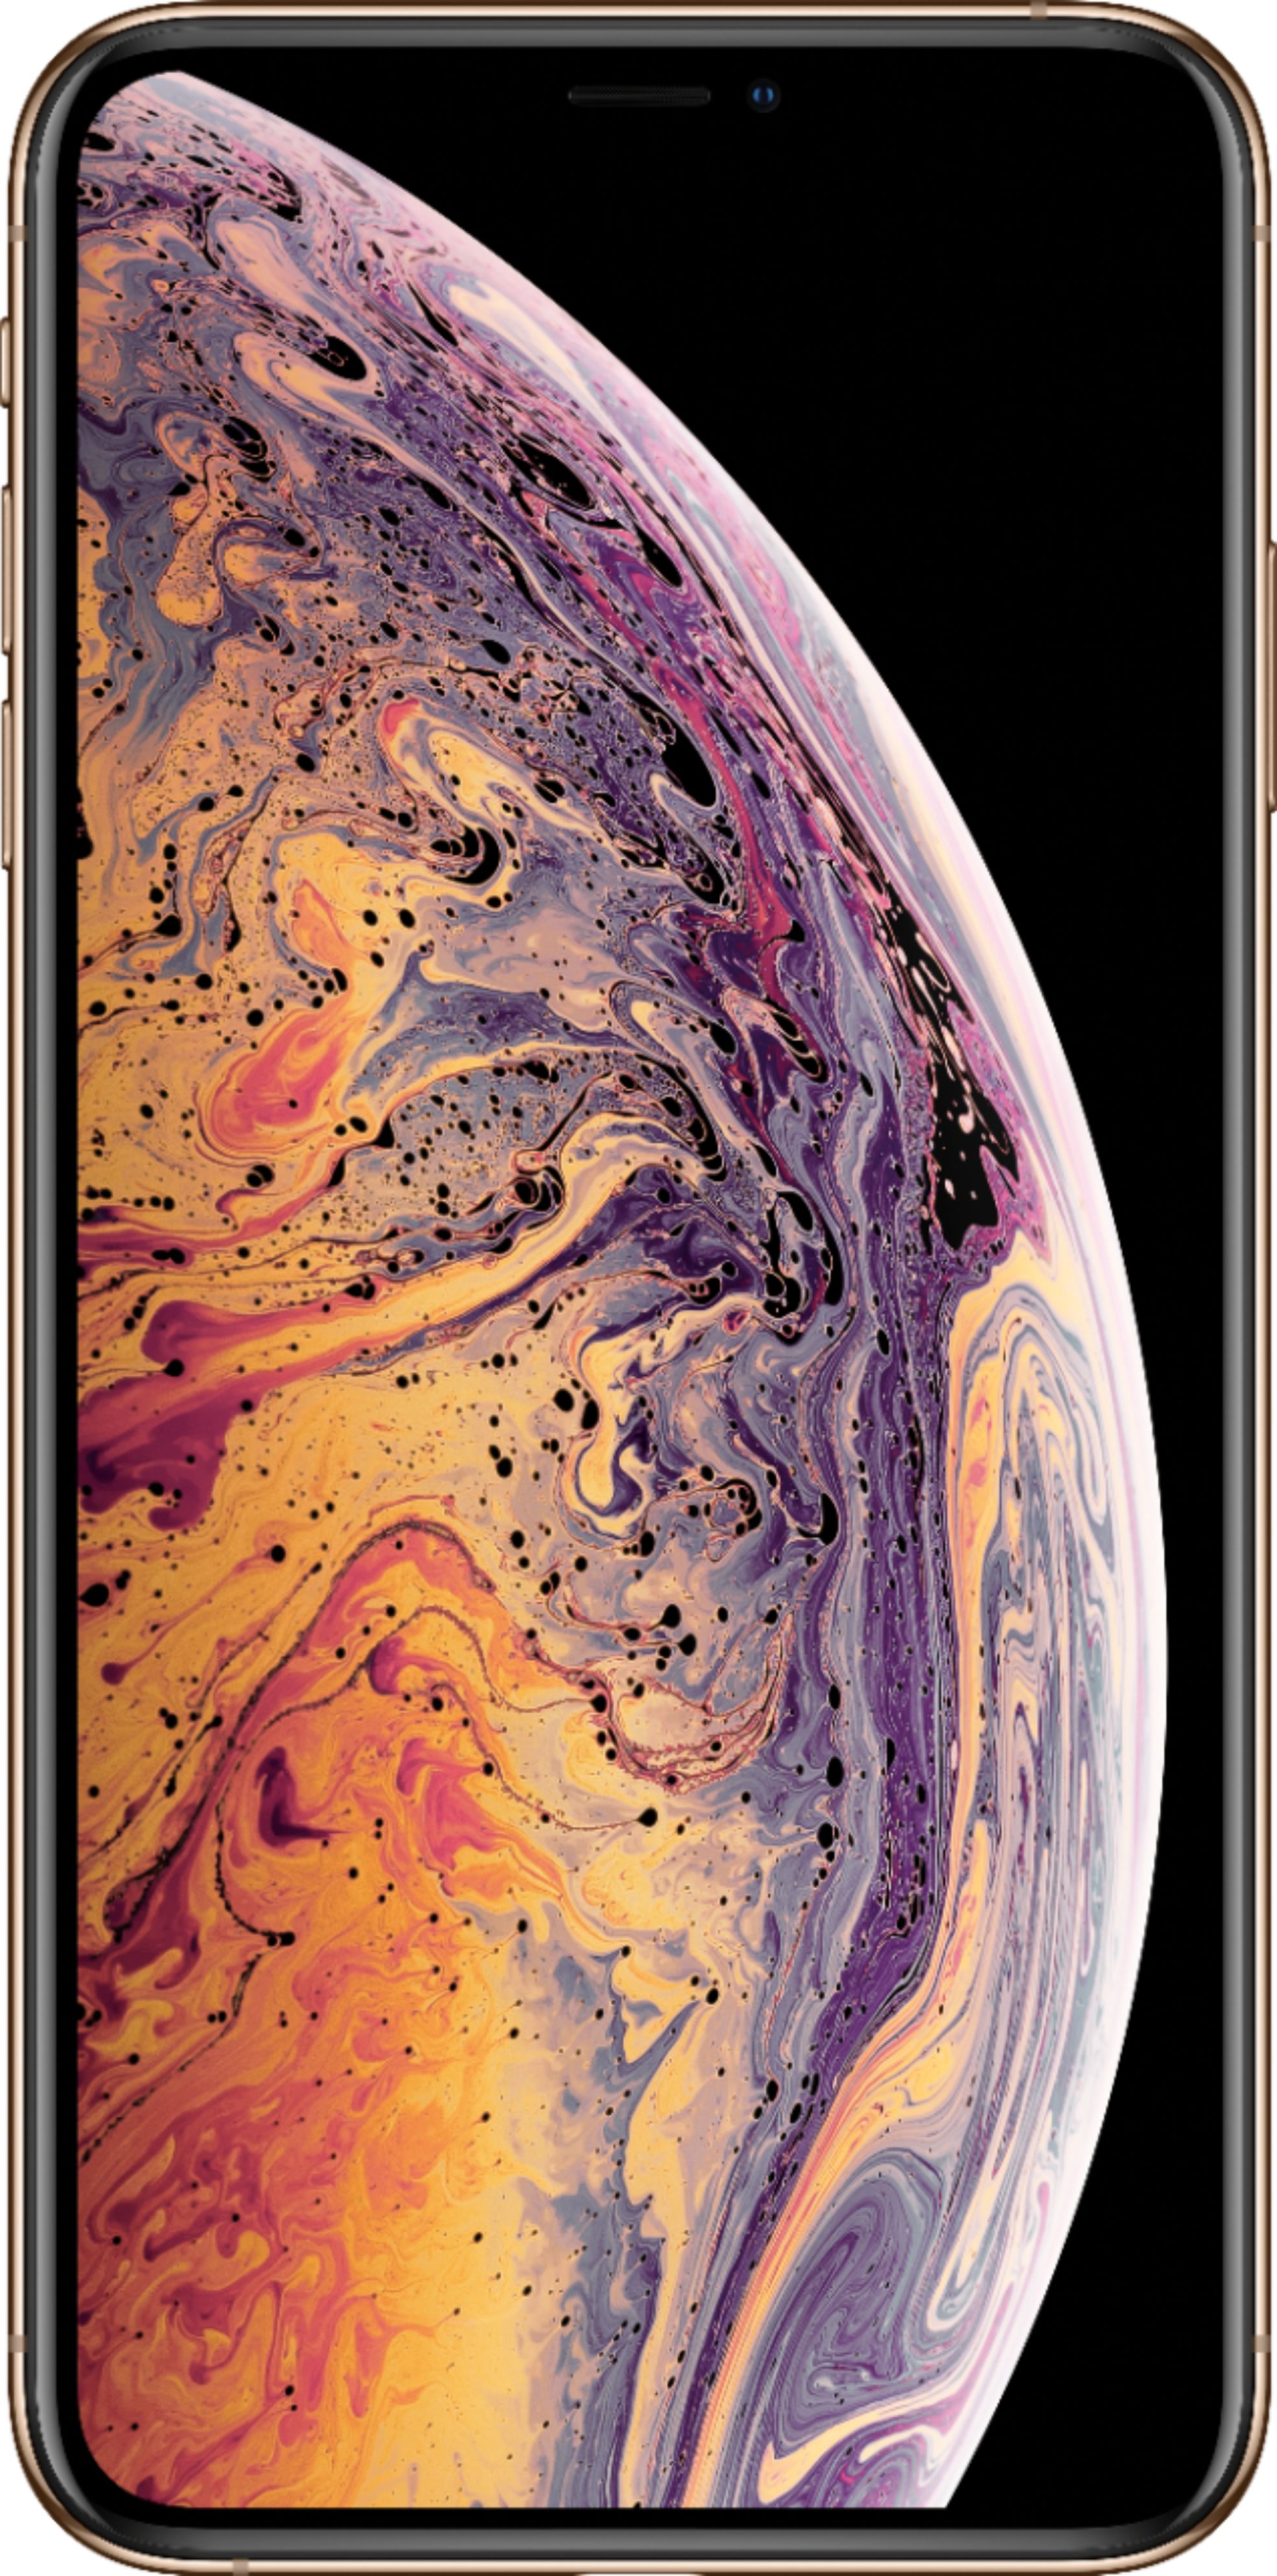 スマートフォン/携帯電話 スマートフォン本体 Apple iPhone XS Max 64GB Gold (AT&T) MT5C2LL/A - Best Buy